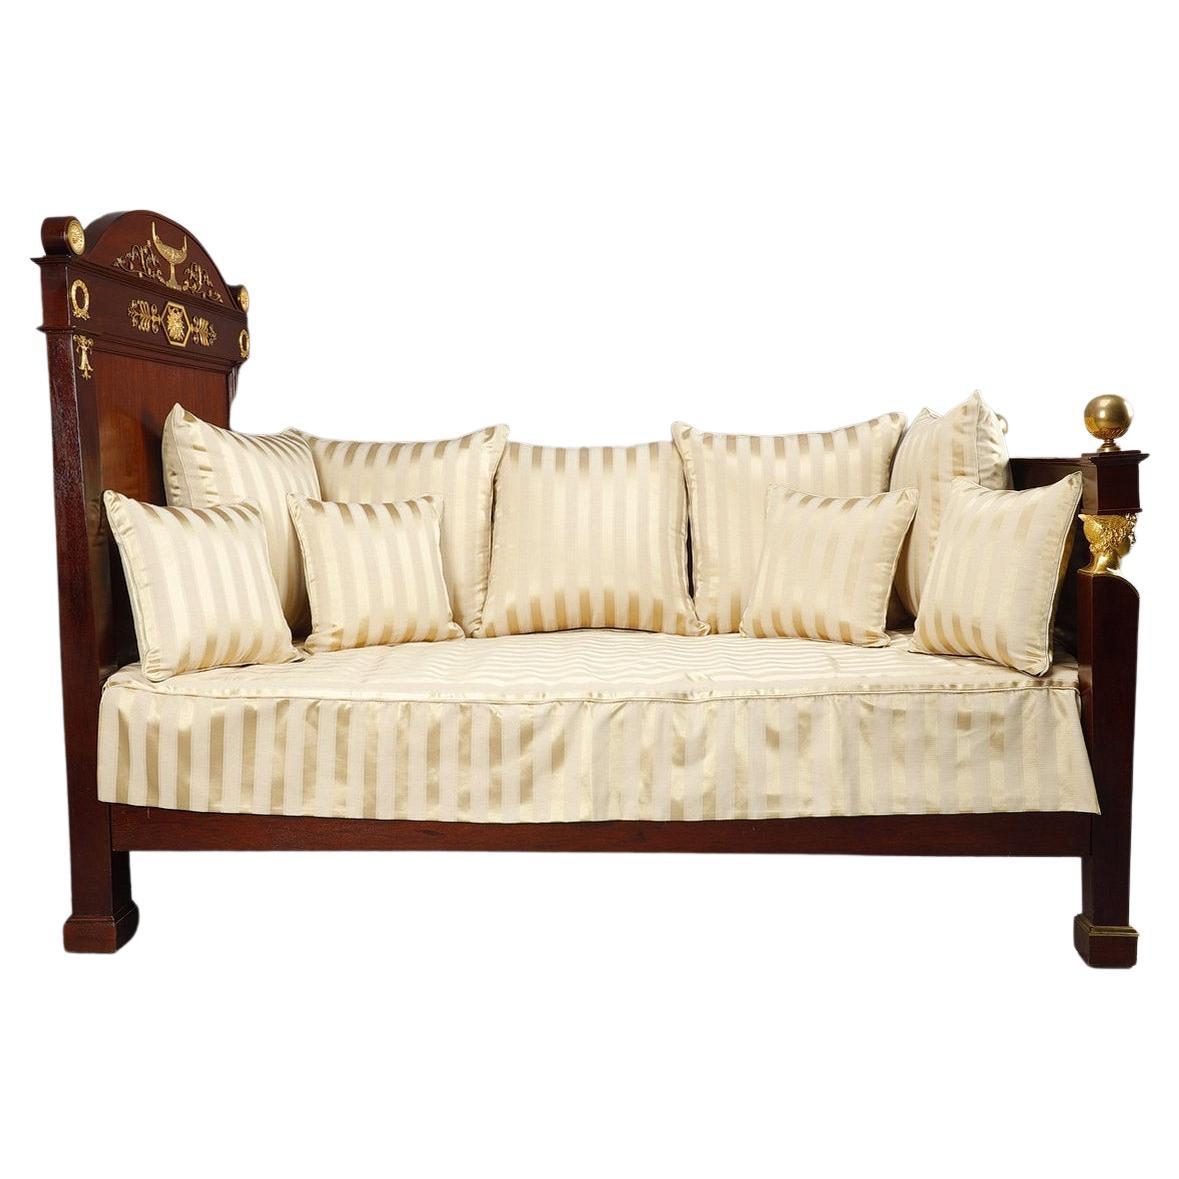 Canapé-lit en acajou de la période Empire, 19ème siècle